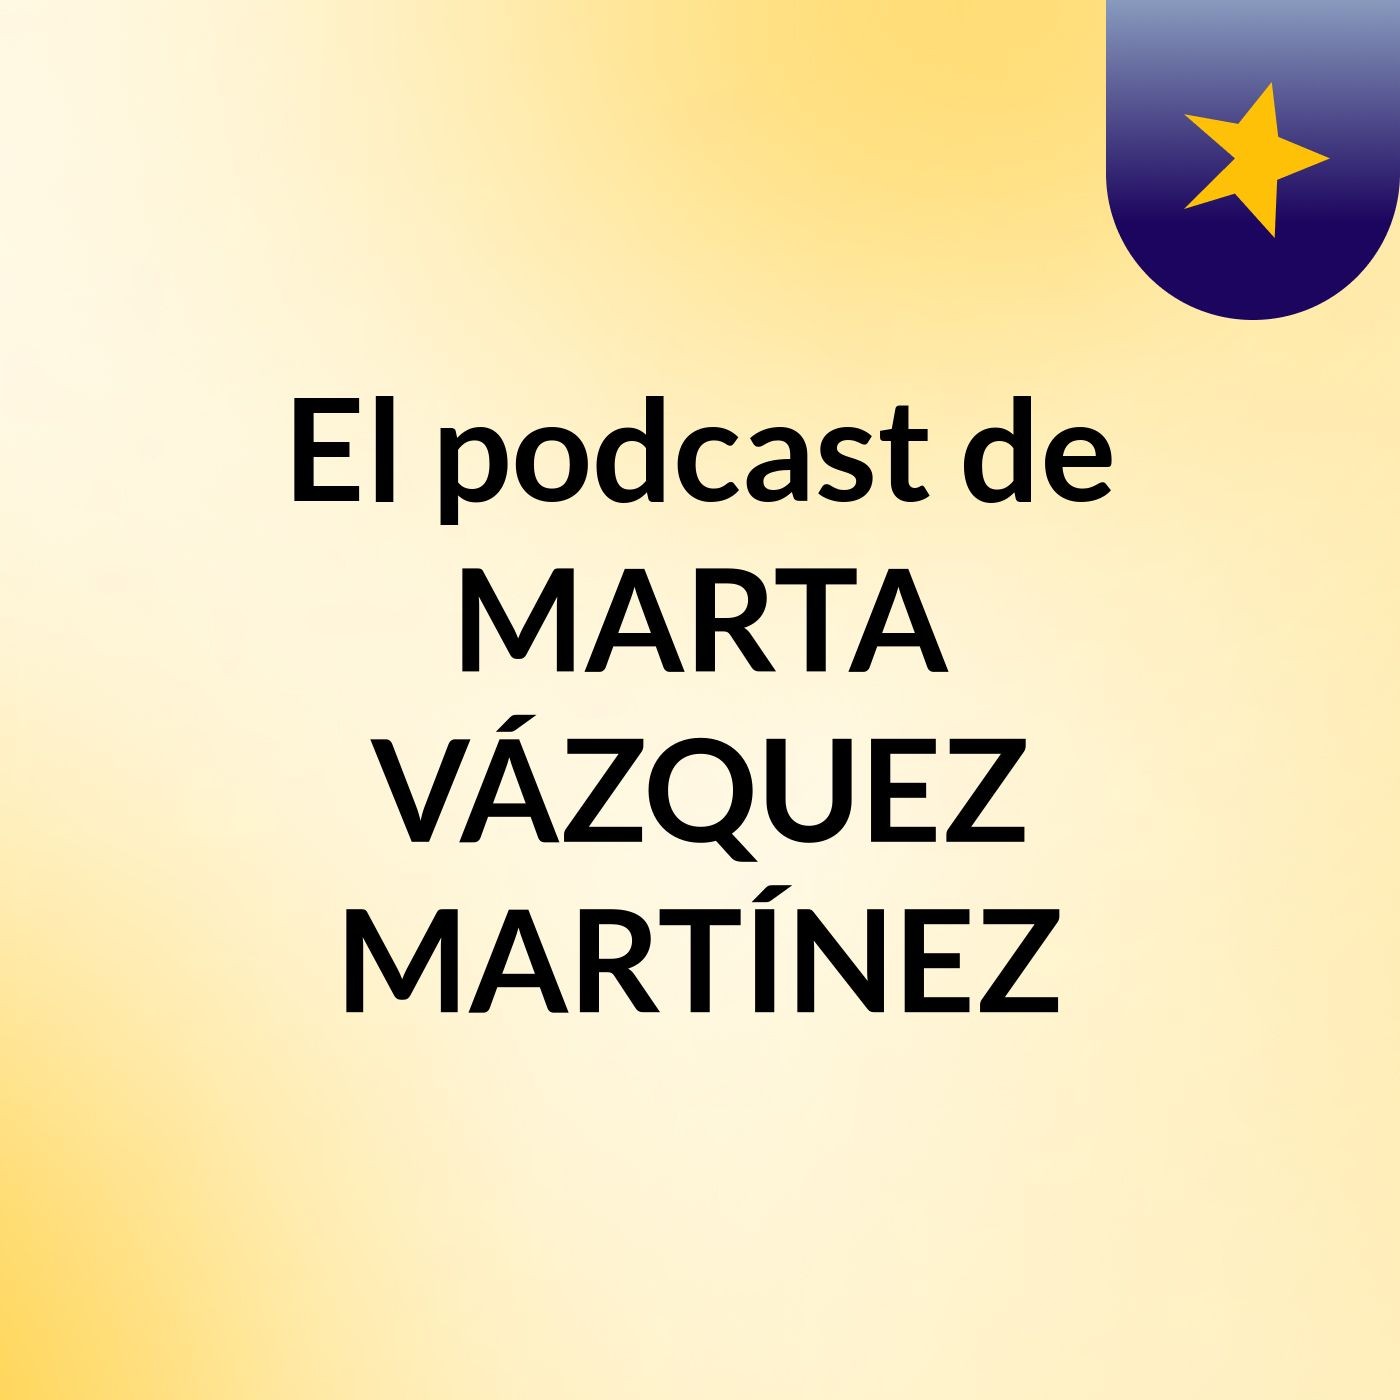 El podcast de MARTA VÁZQUEZ MARTÍNEZ